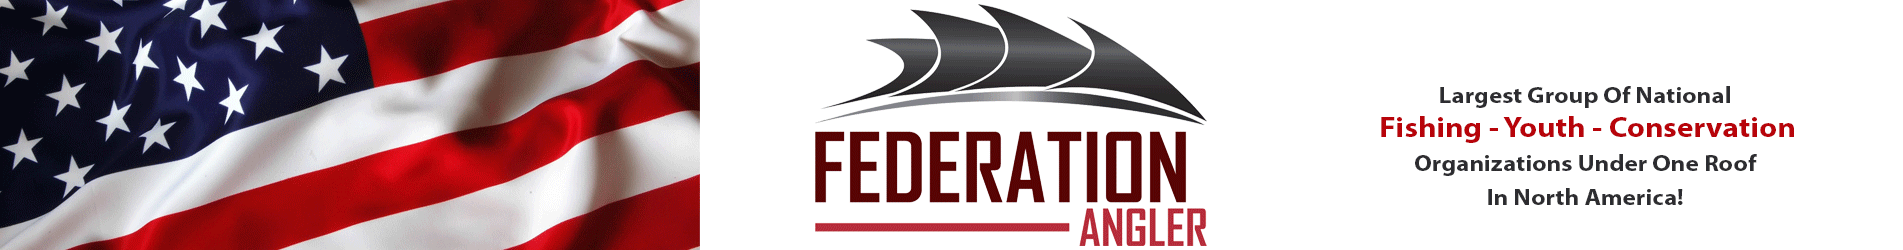 Federation Angler Group